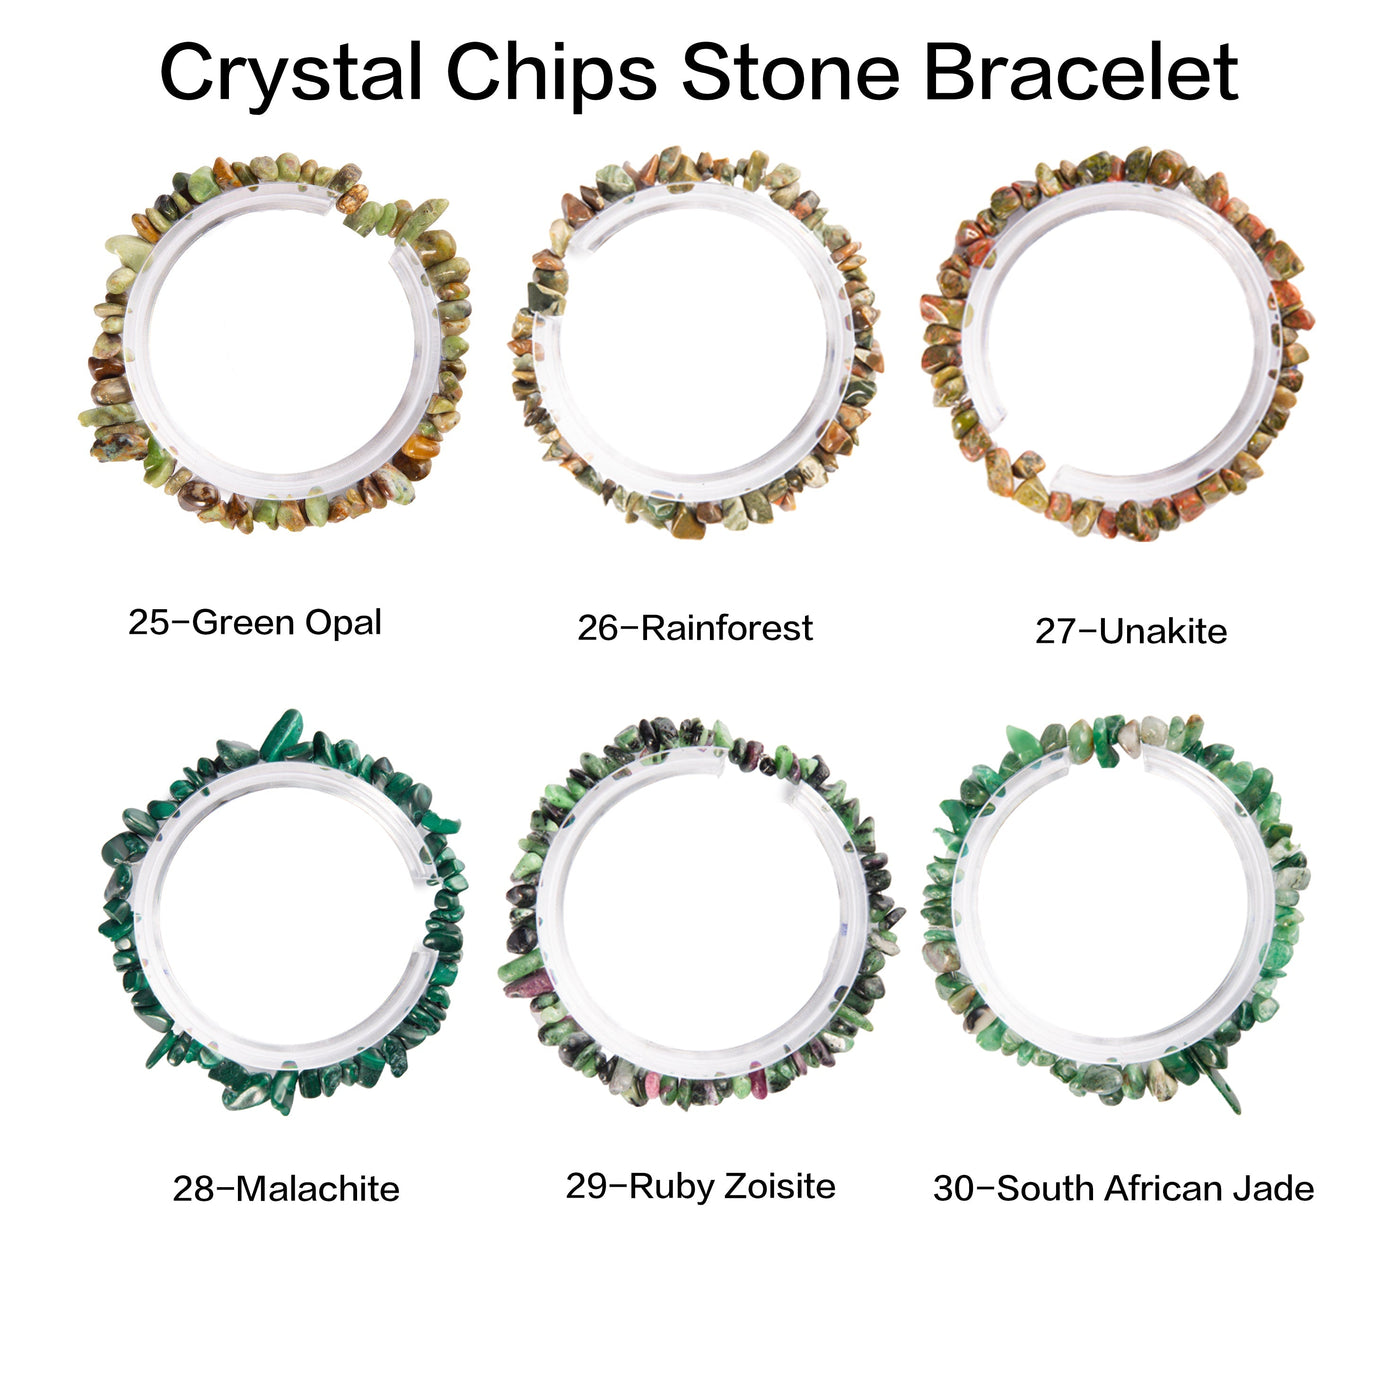 Natural crystal chips bracelet 100 kinds of bracelets No.71-100